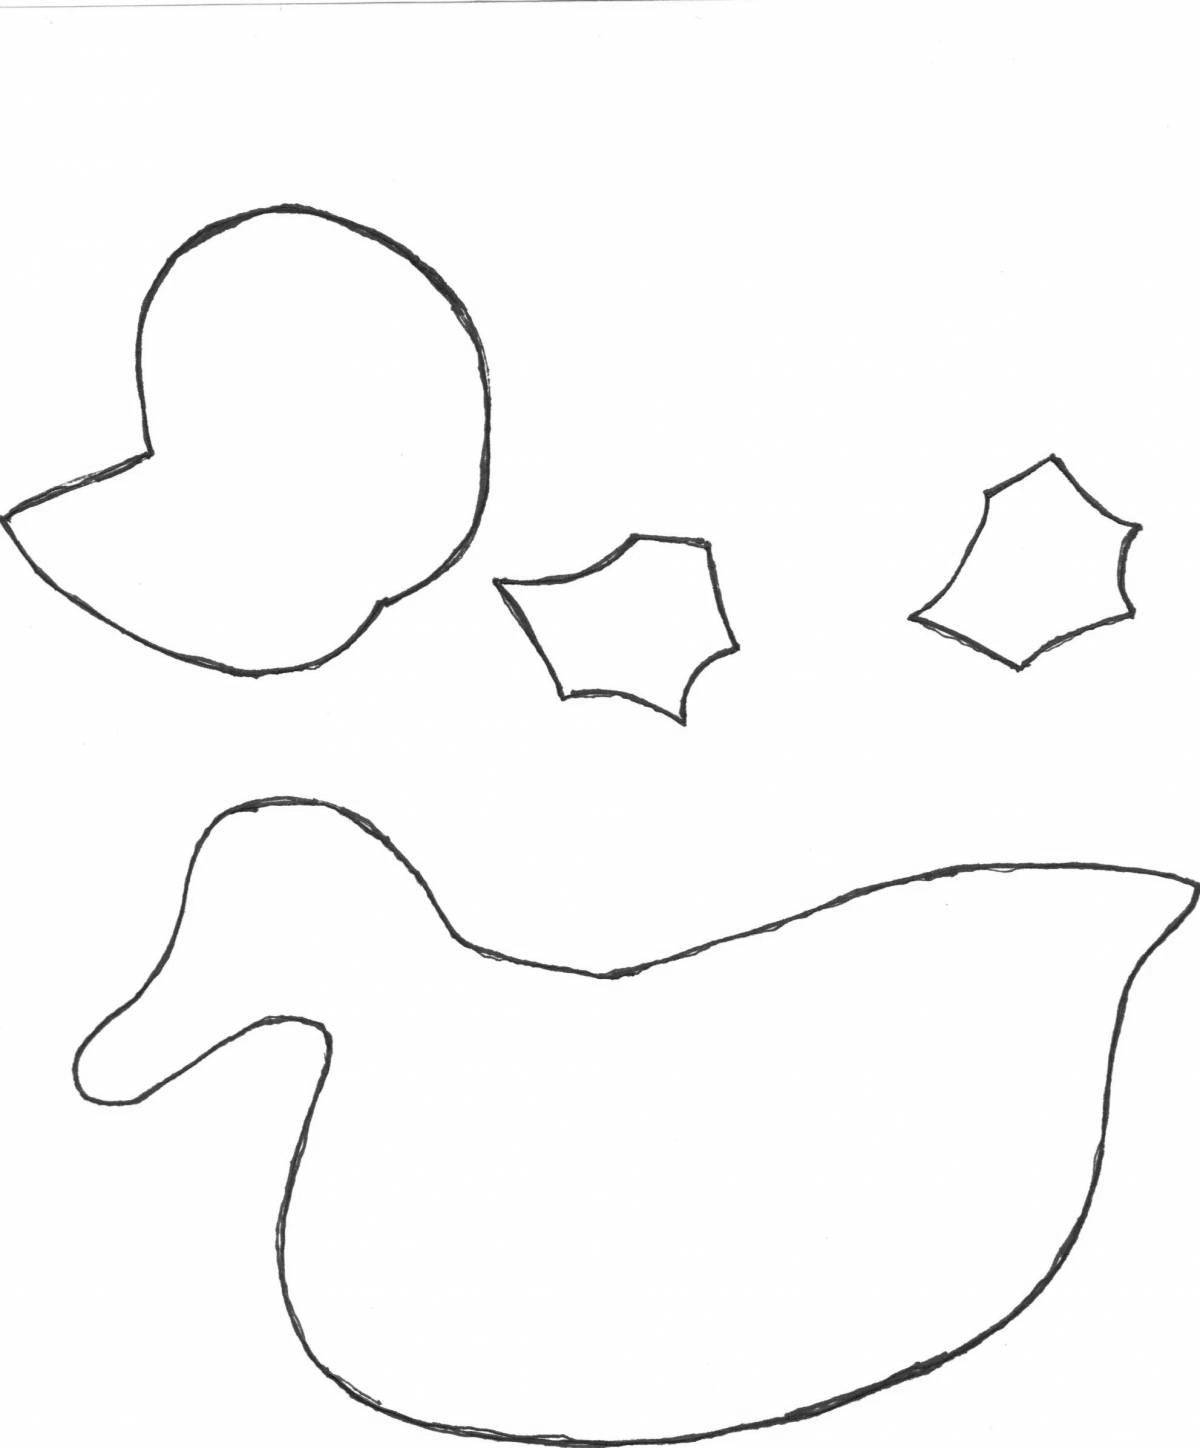 Юмористическая дымковская утка 2 младшая группа раскраска